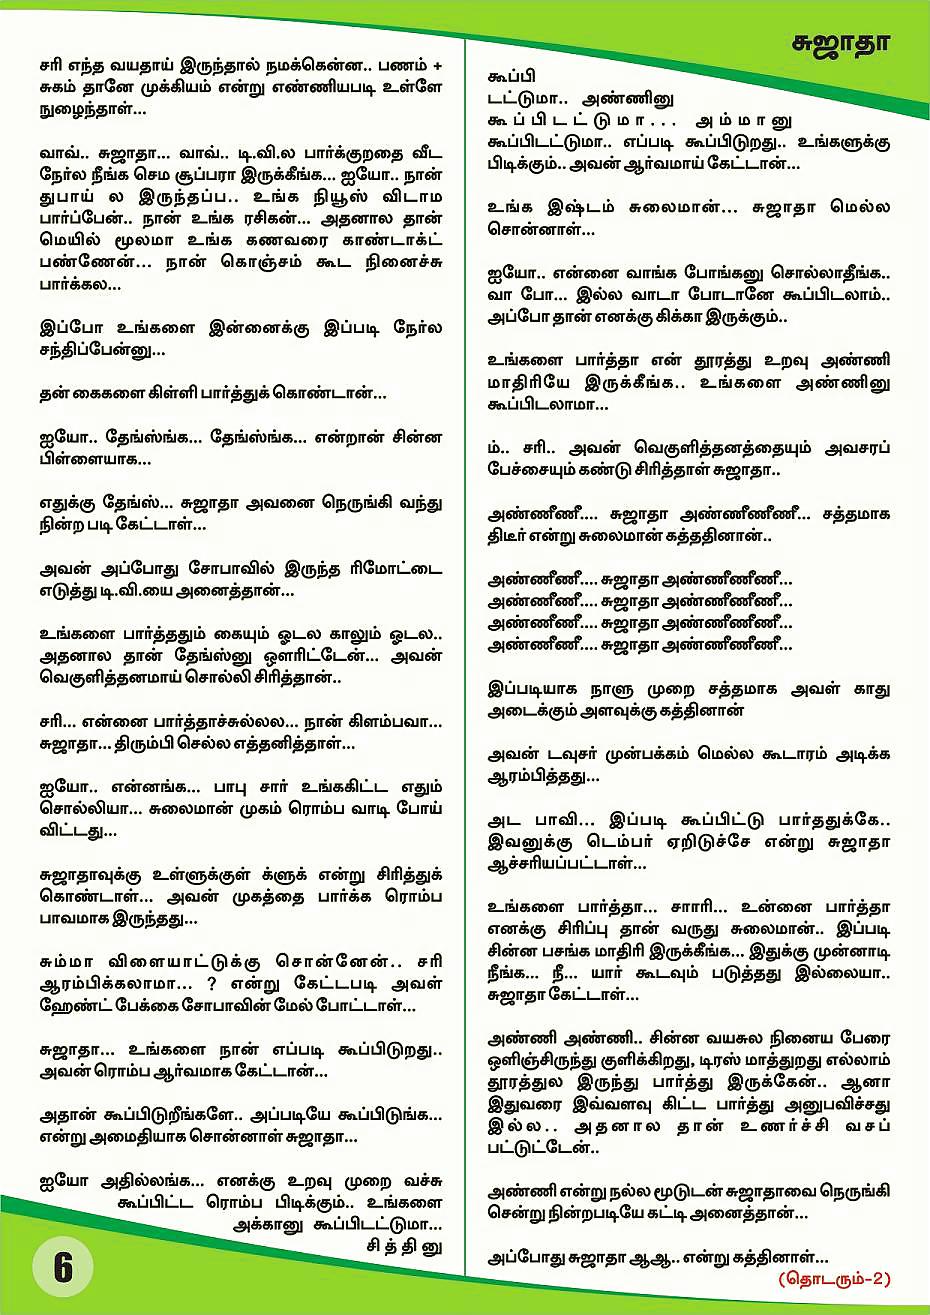 Tamil sex stories akka thangai